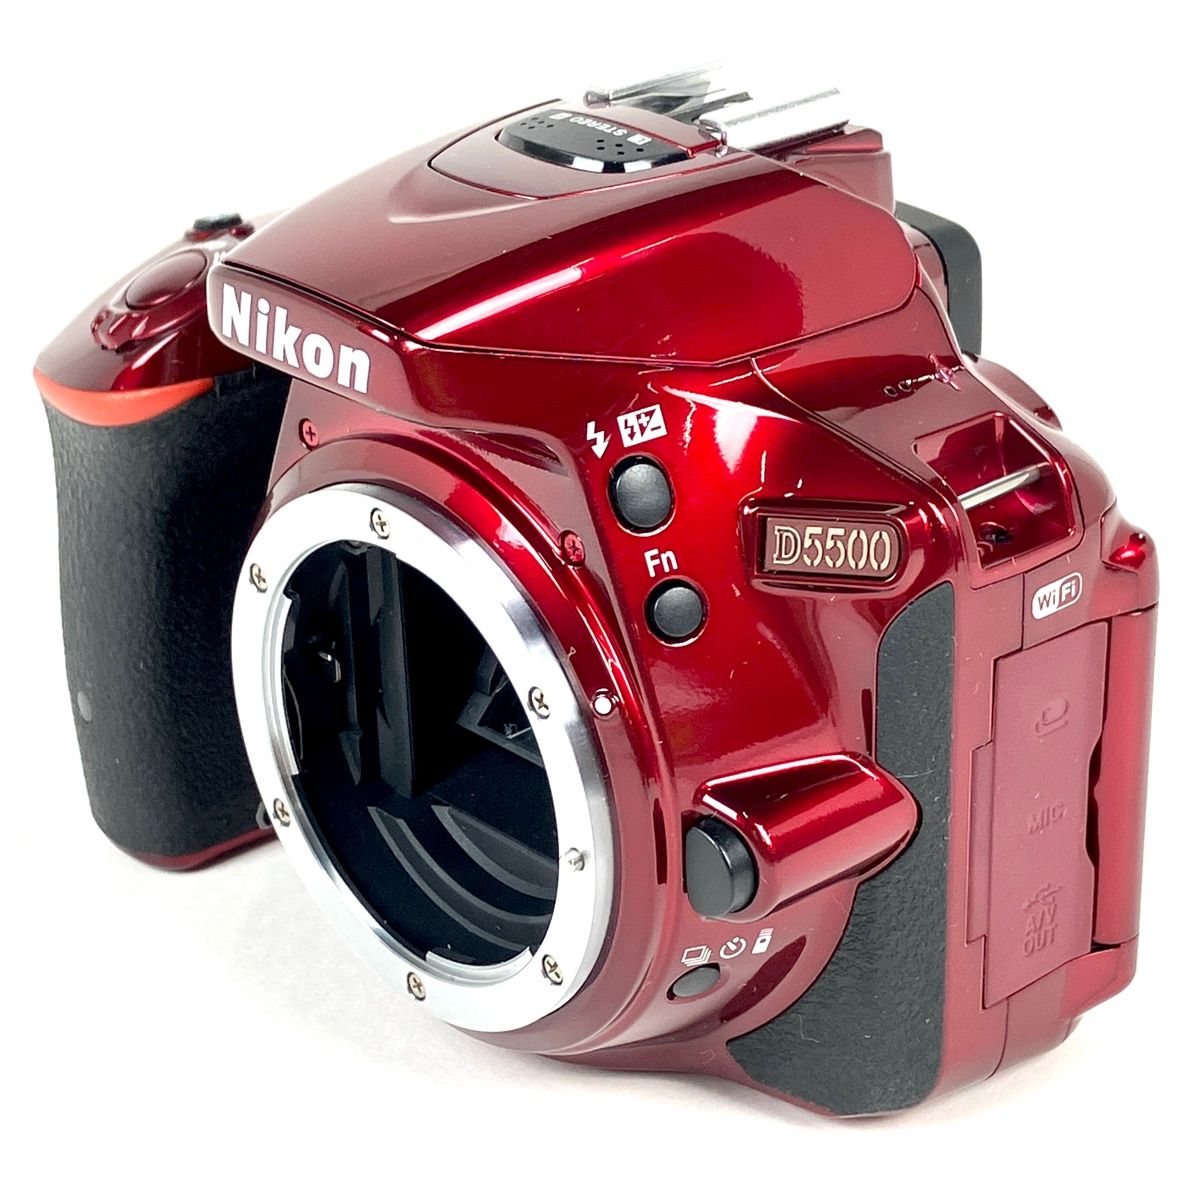 ニコン Nikon D5500 ボディ レッド 赤 デジタル 一眼レフカメラ 【中古